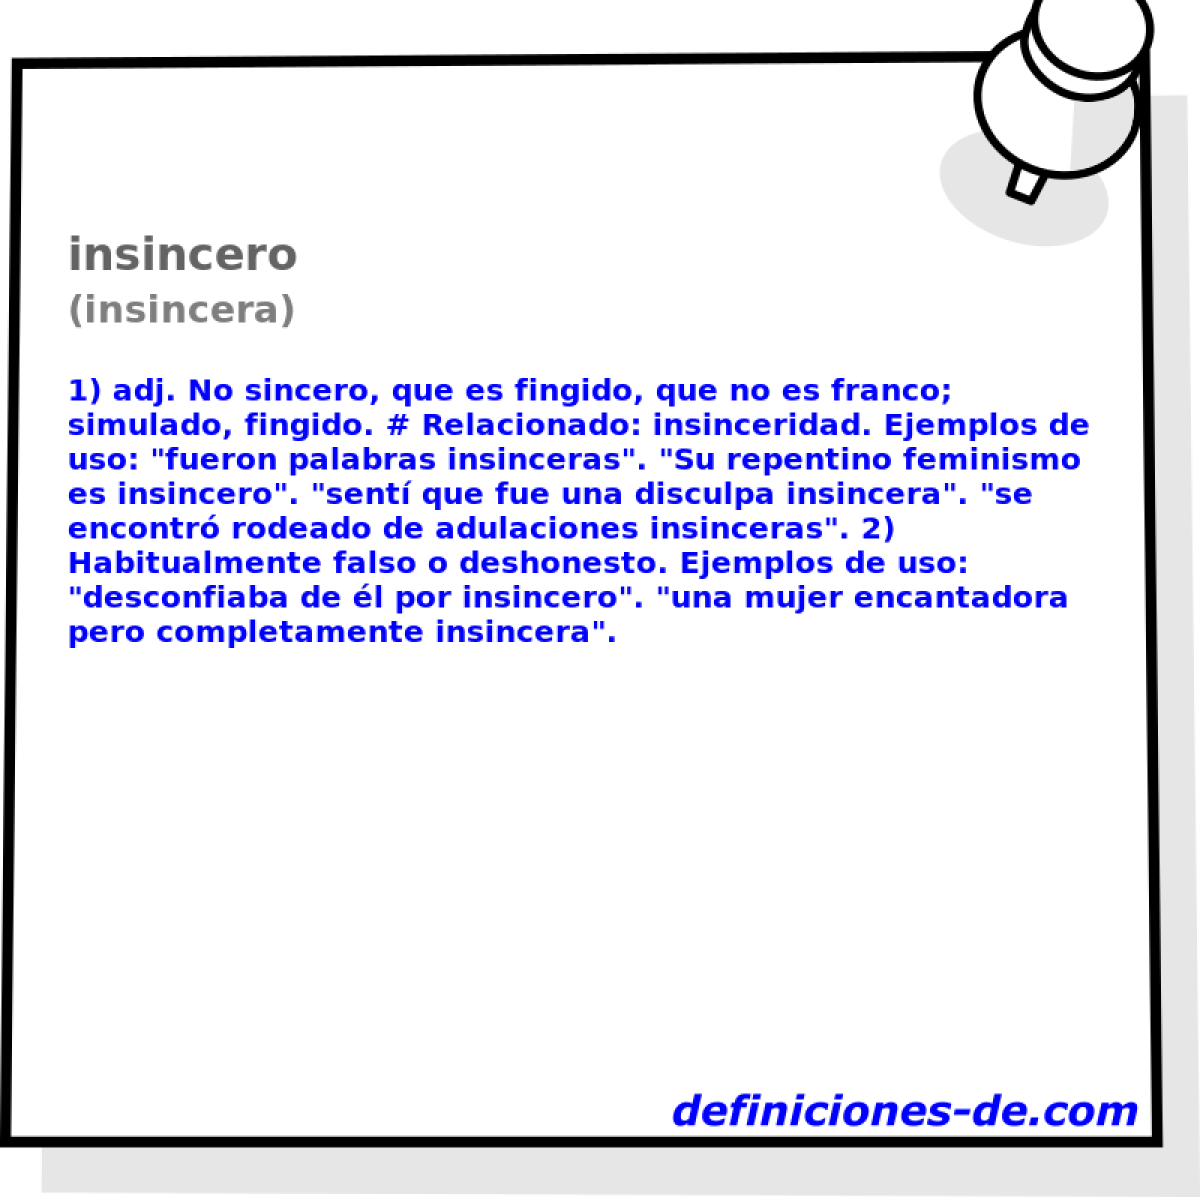 insincero (insincera)